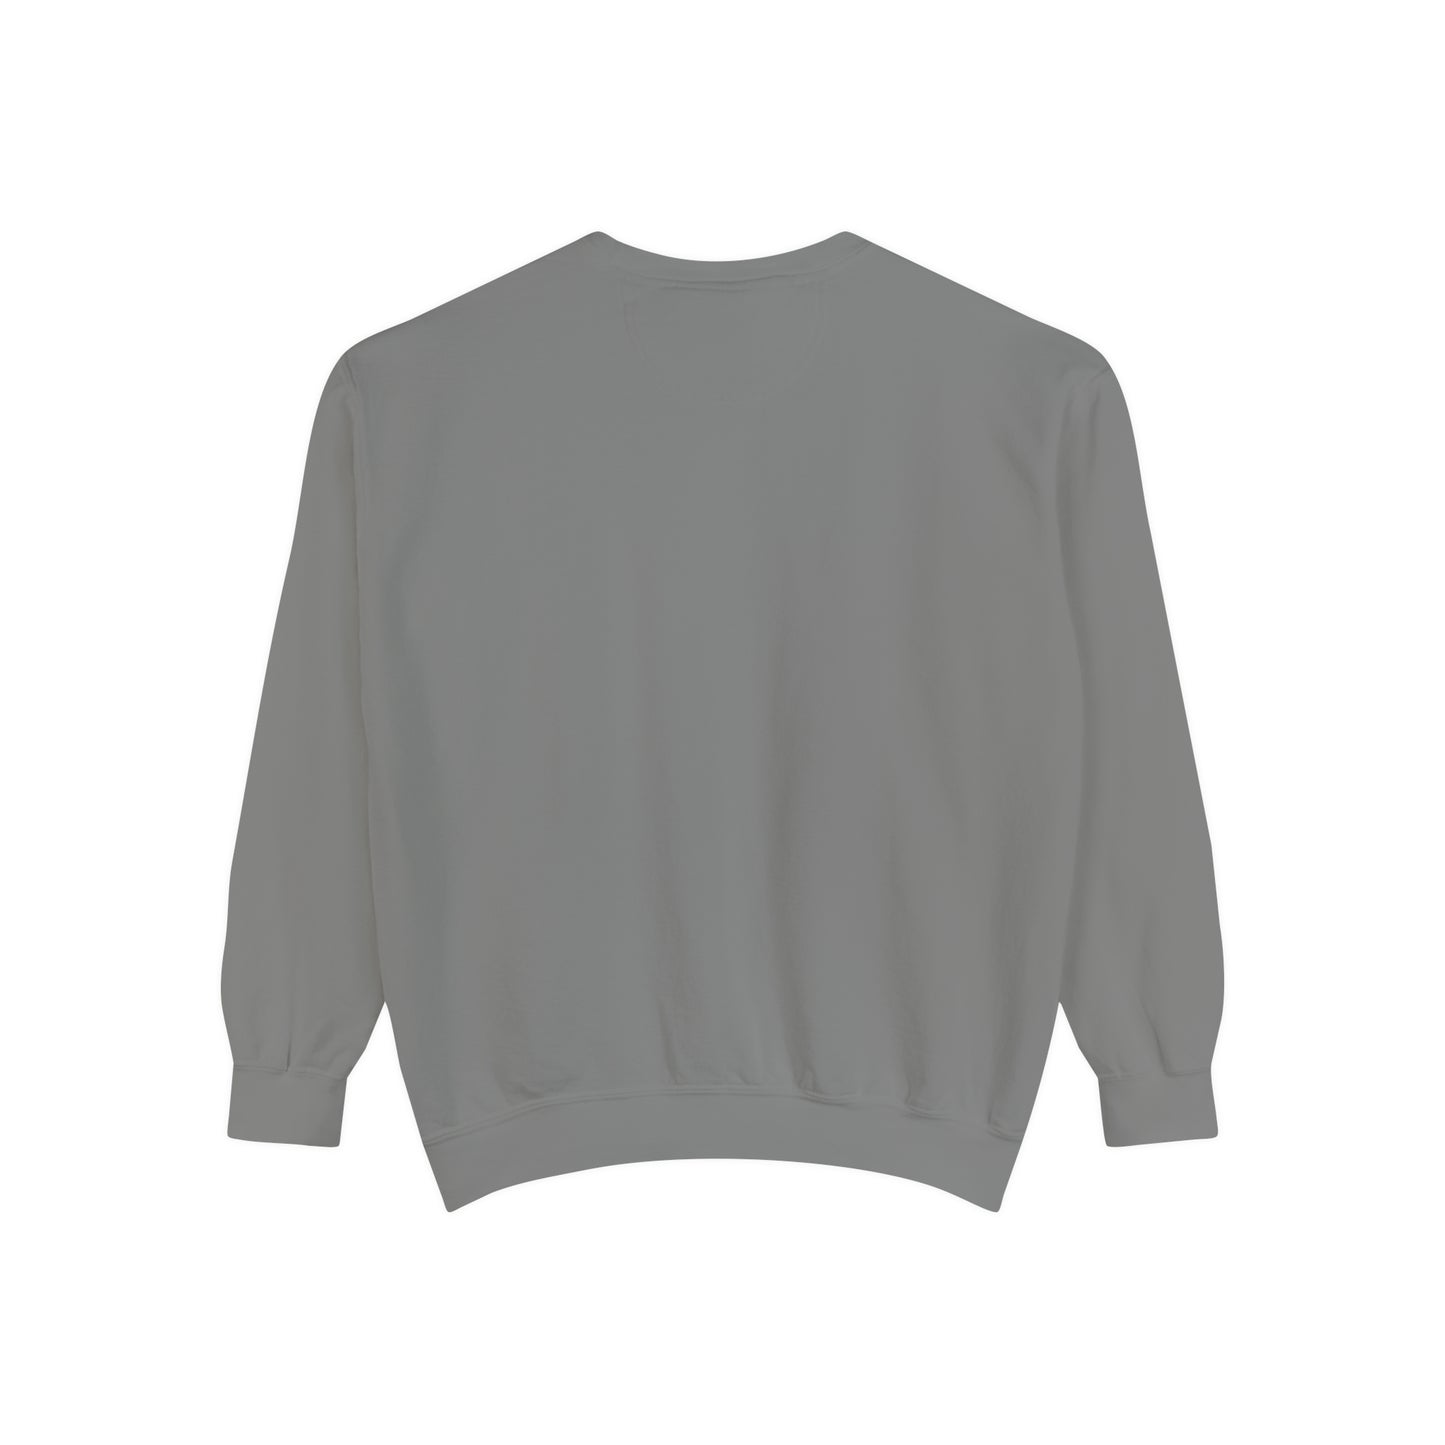 Spooky Season Ghost Garment-Dyed Sweatshirt